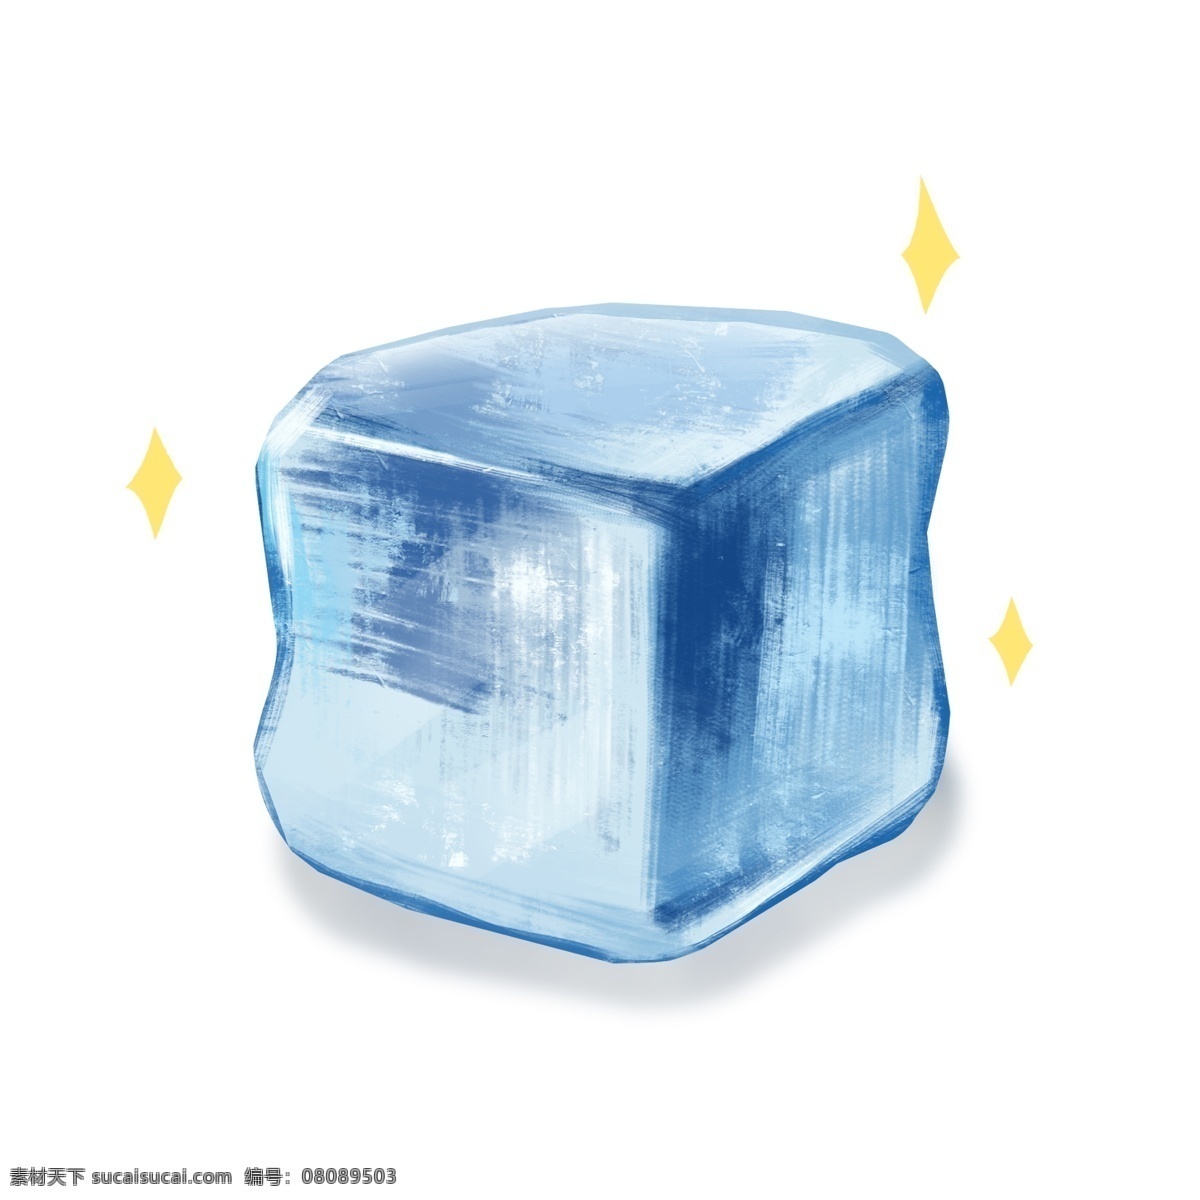 正方体 立体 冰块 插画 蓝色冰块 清凉冰块 夏季冰块 夏天 解暑降温 正方体冰块 立体冰块 蓝色